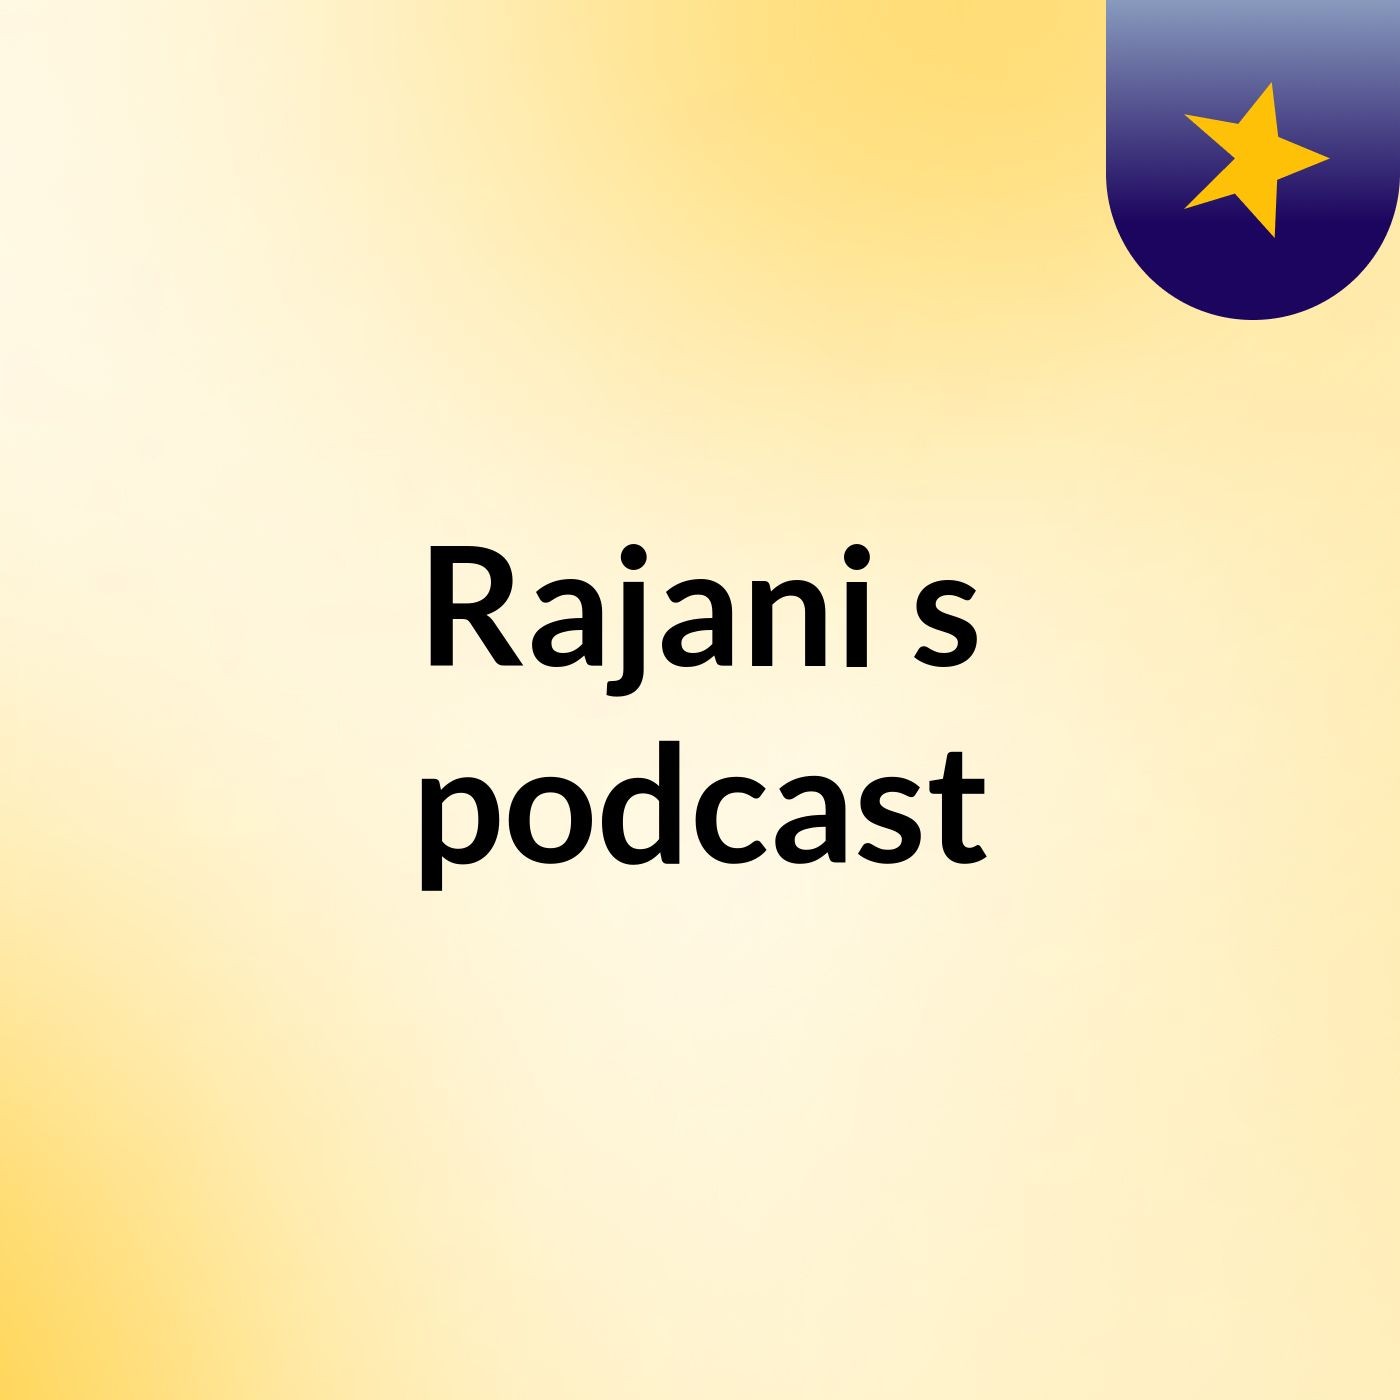 Rajani's podcast